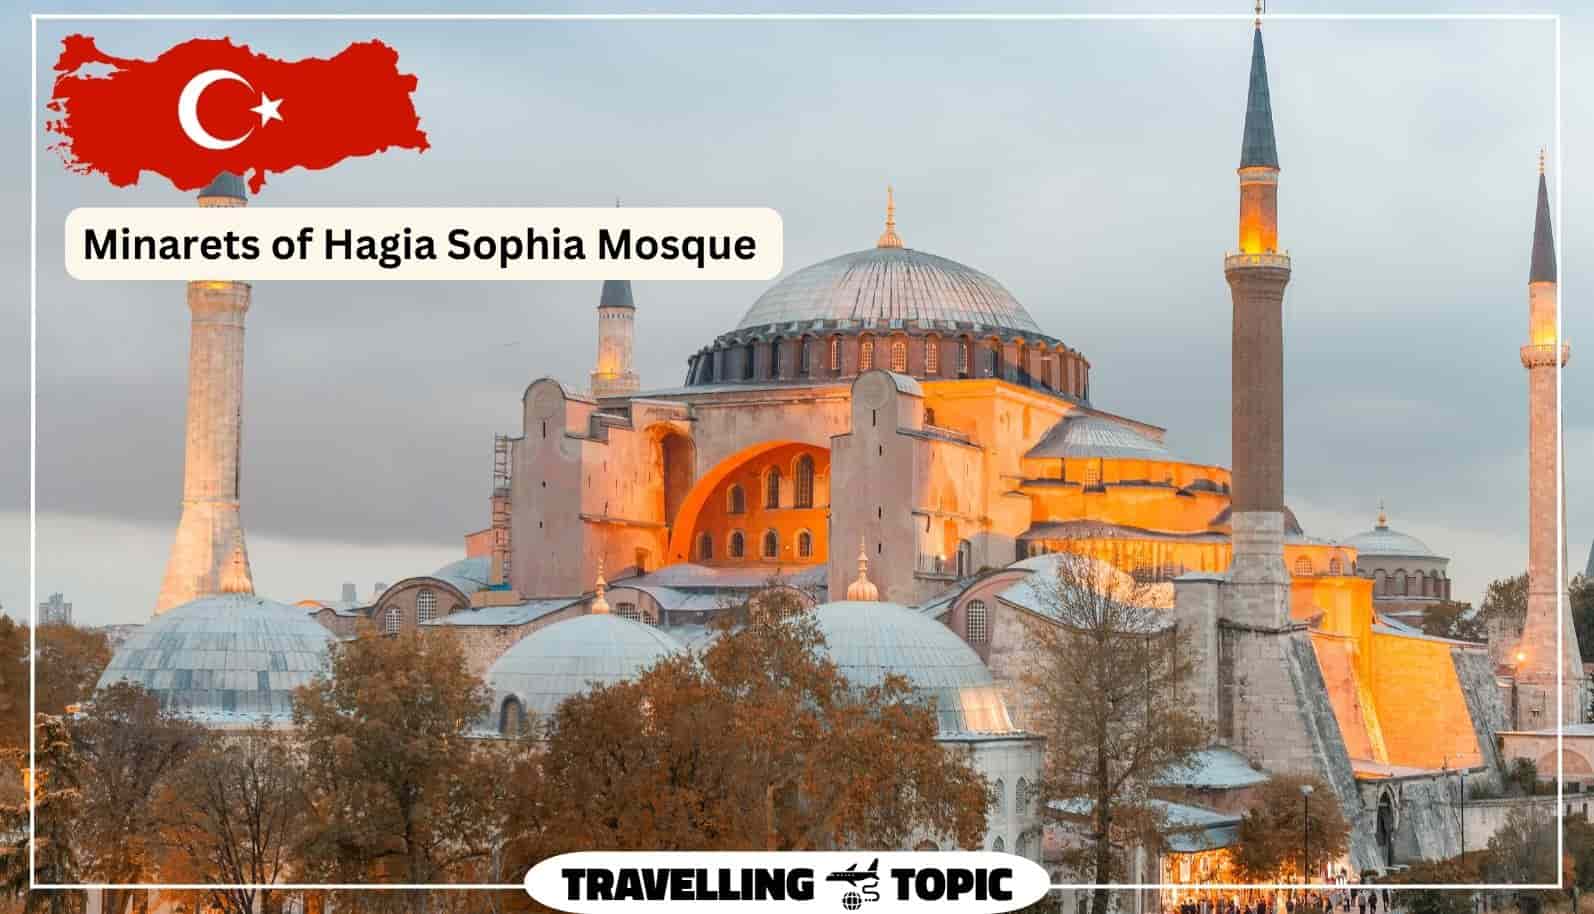 Minarets of Hagia Sophia Mosque